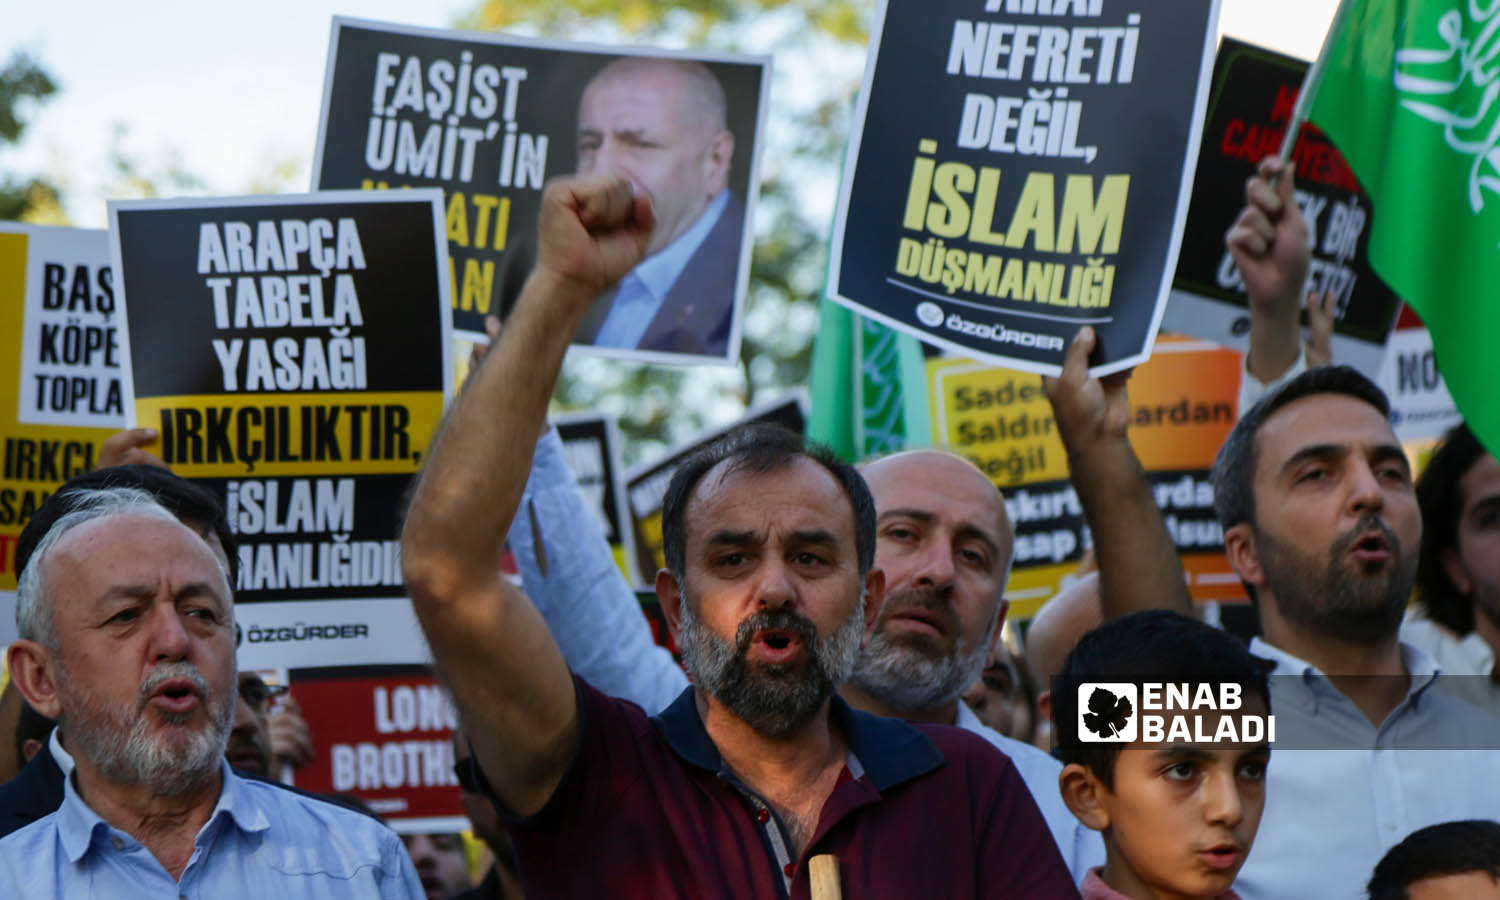 ناشطون أتراك يتضامنون مع اللاجئين السوريين في تركيا ويطالبون بوقف خطاب الكراهية ومحاسبة العنصريين- اسطنبول 16 من أيلول 2023 (- يوسف حمّص)